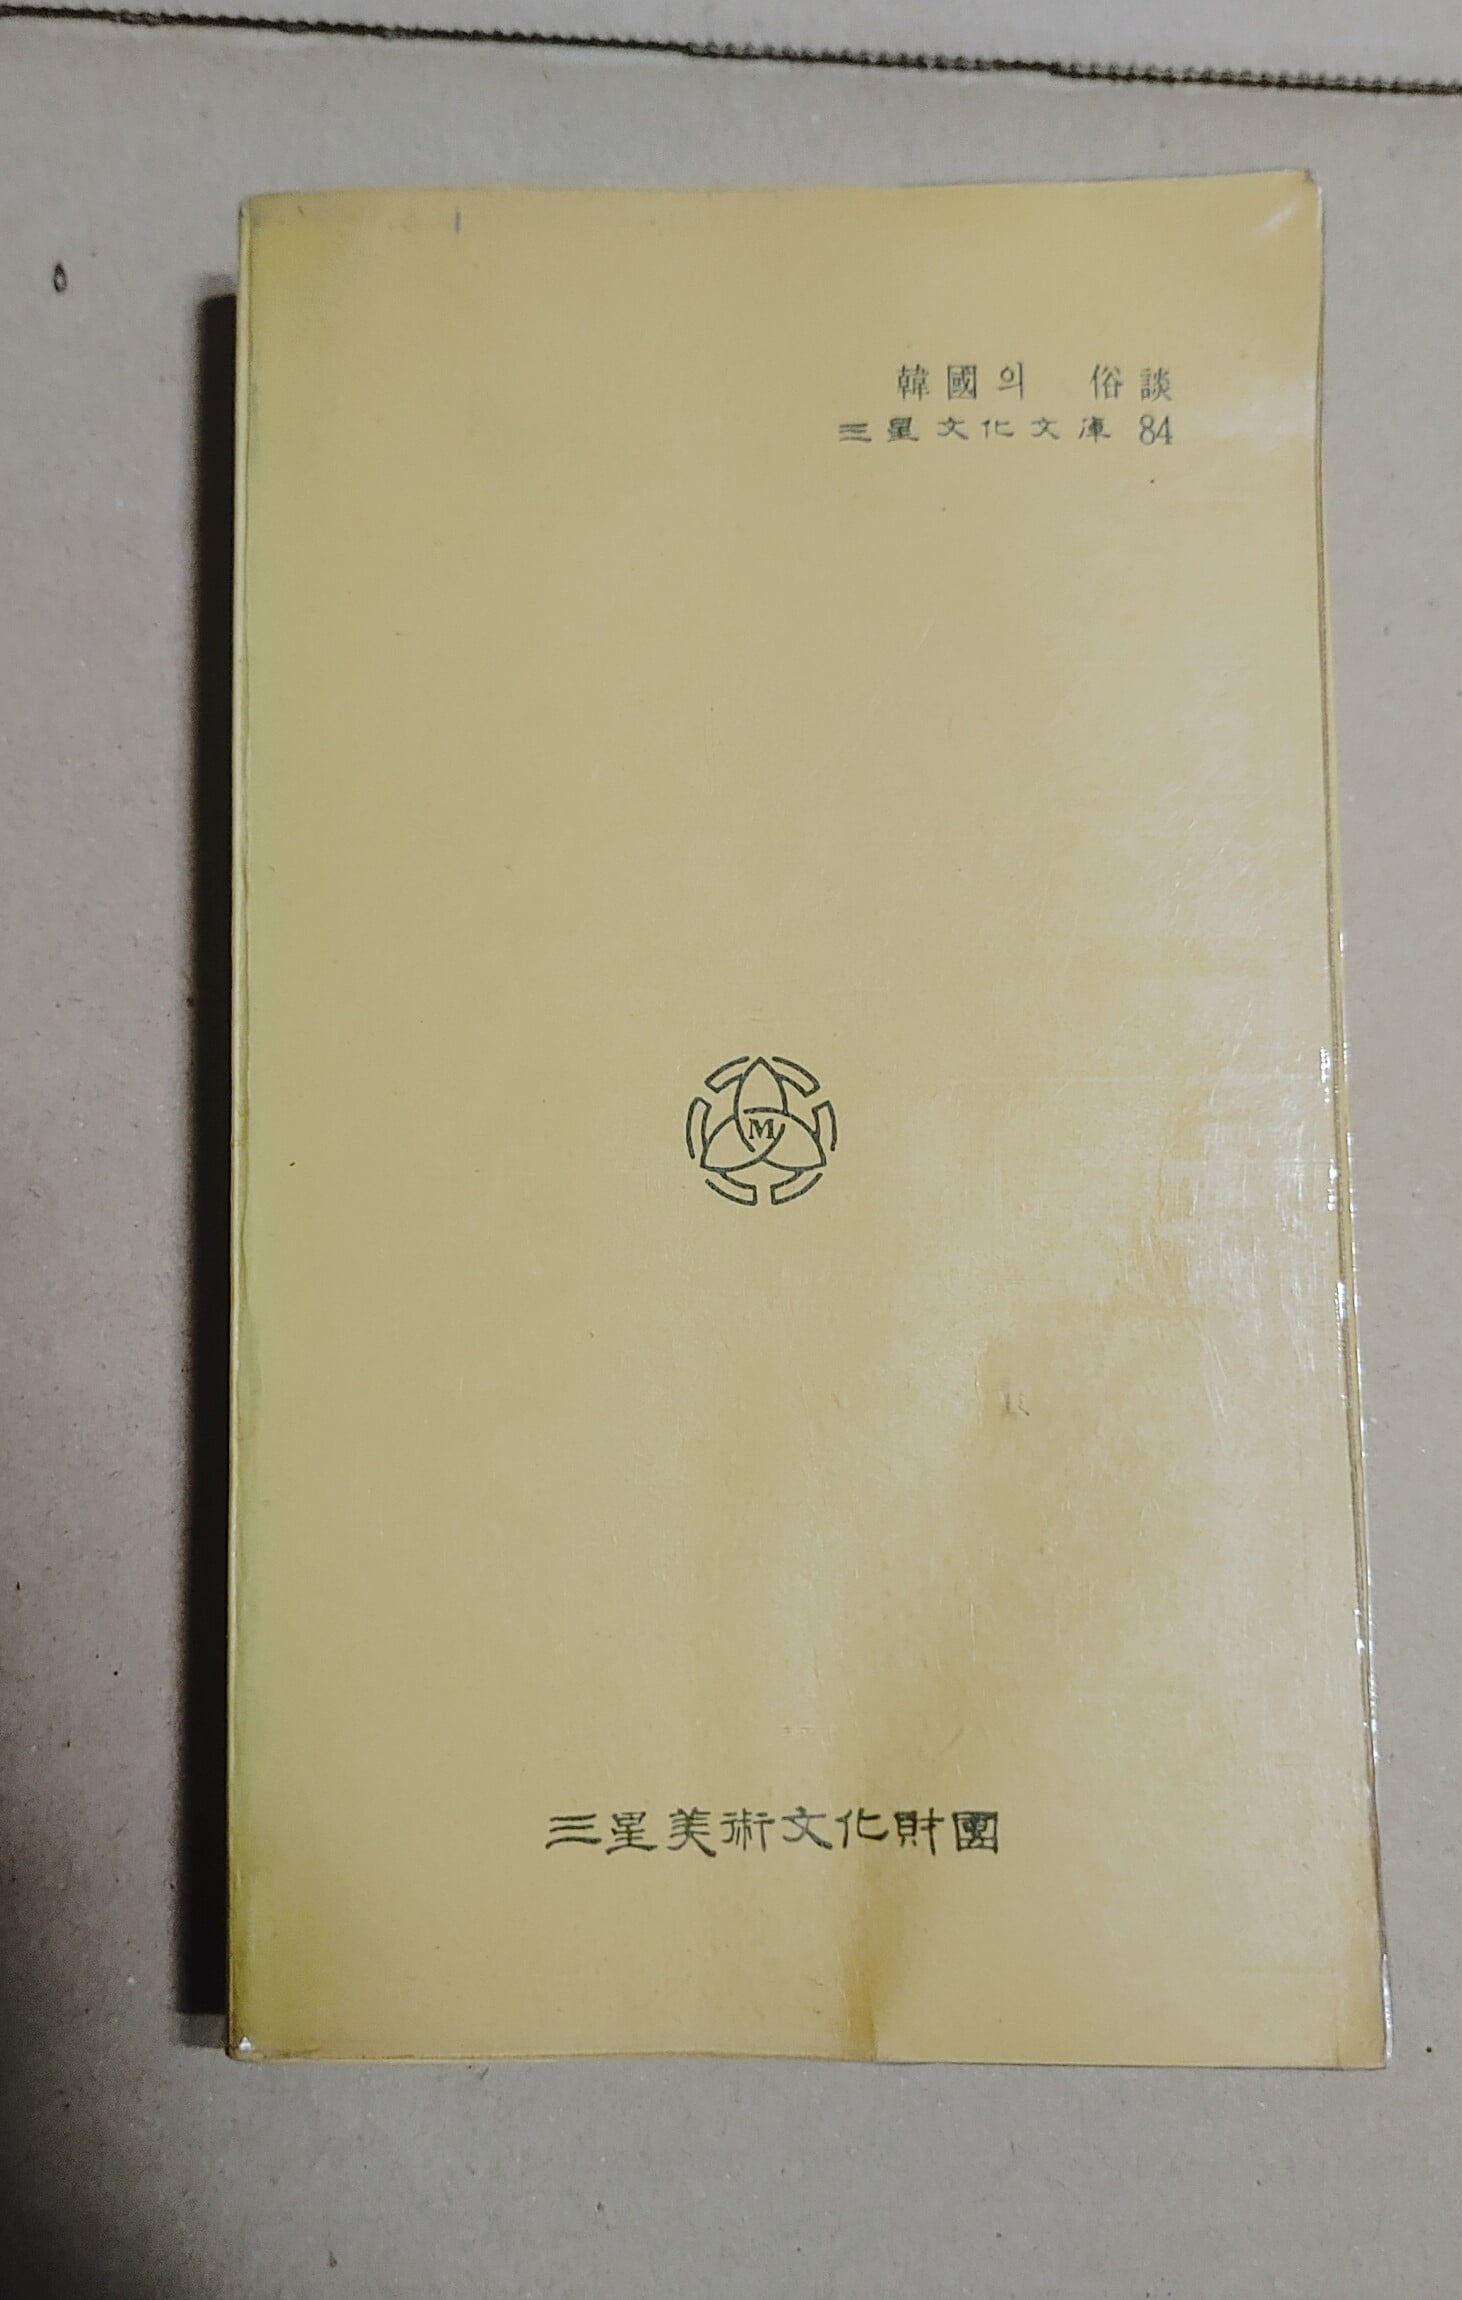 三星文化文庫 84  韓國의 俗談  李基文編著